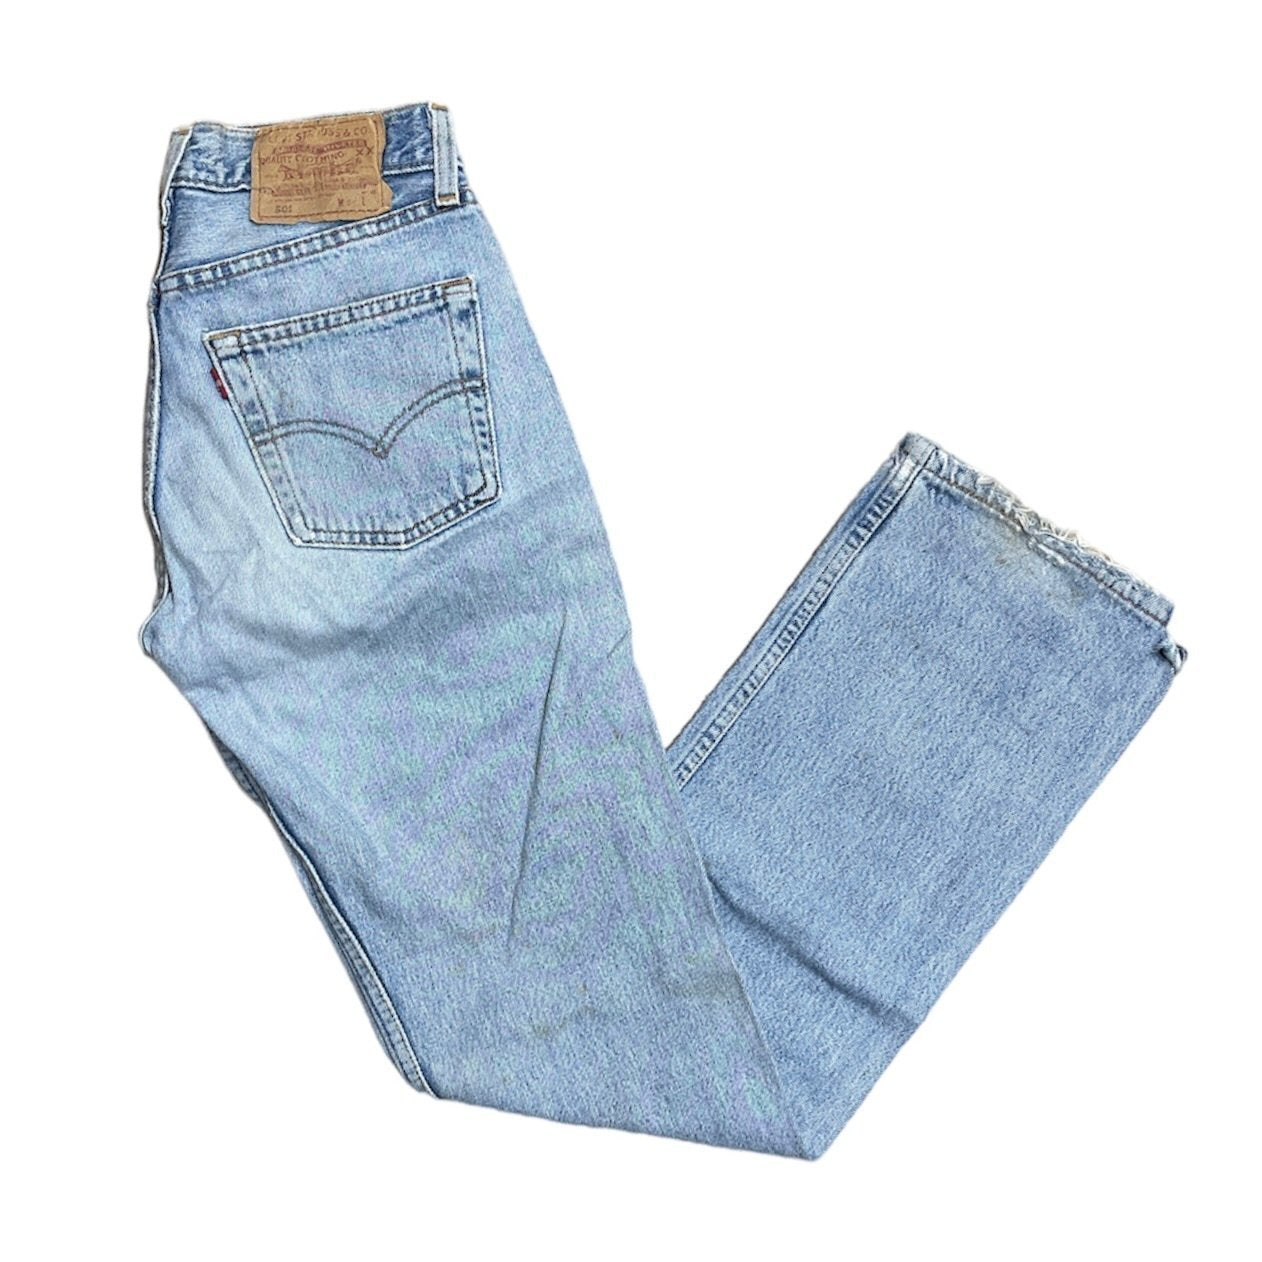 Vintage Levis 501 Distressed Light Blue Jeans (W26/L32)